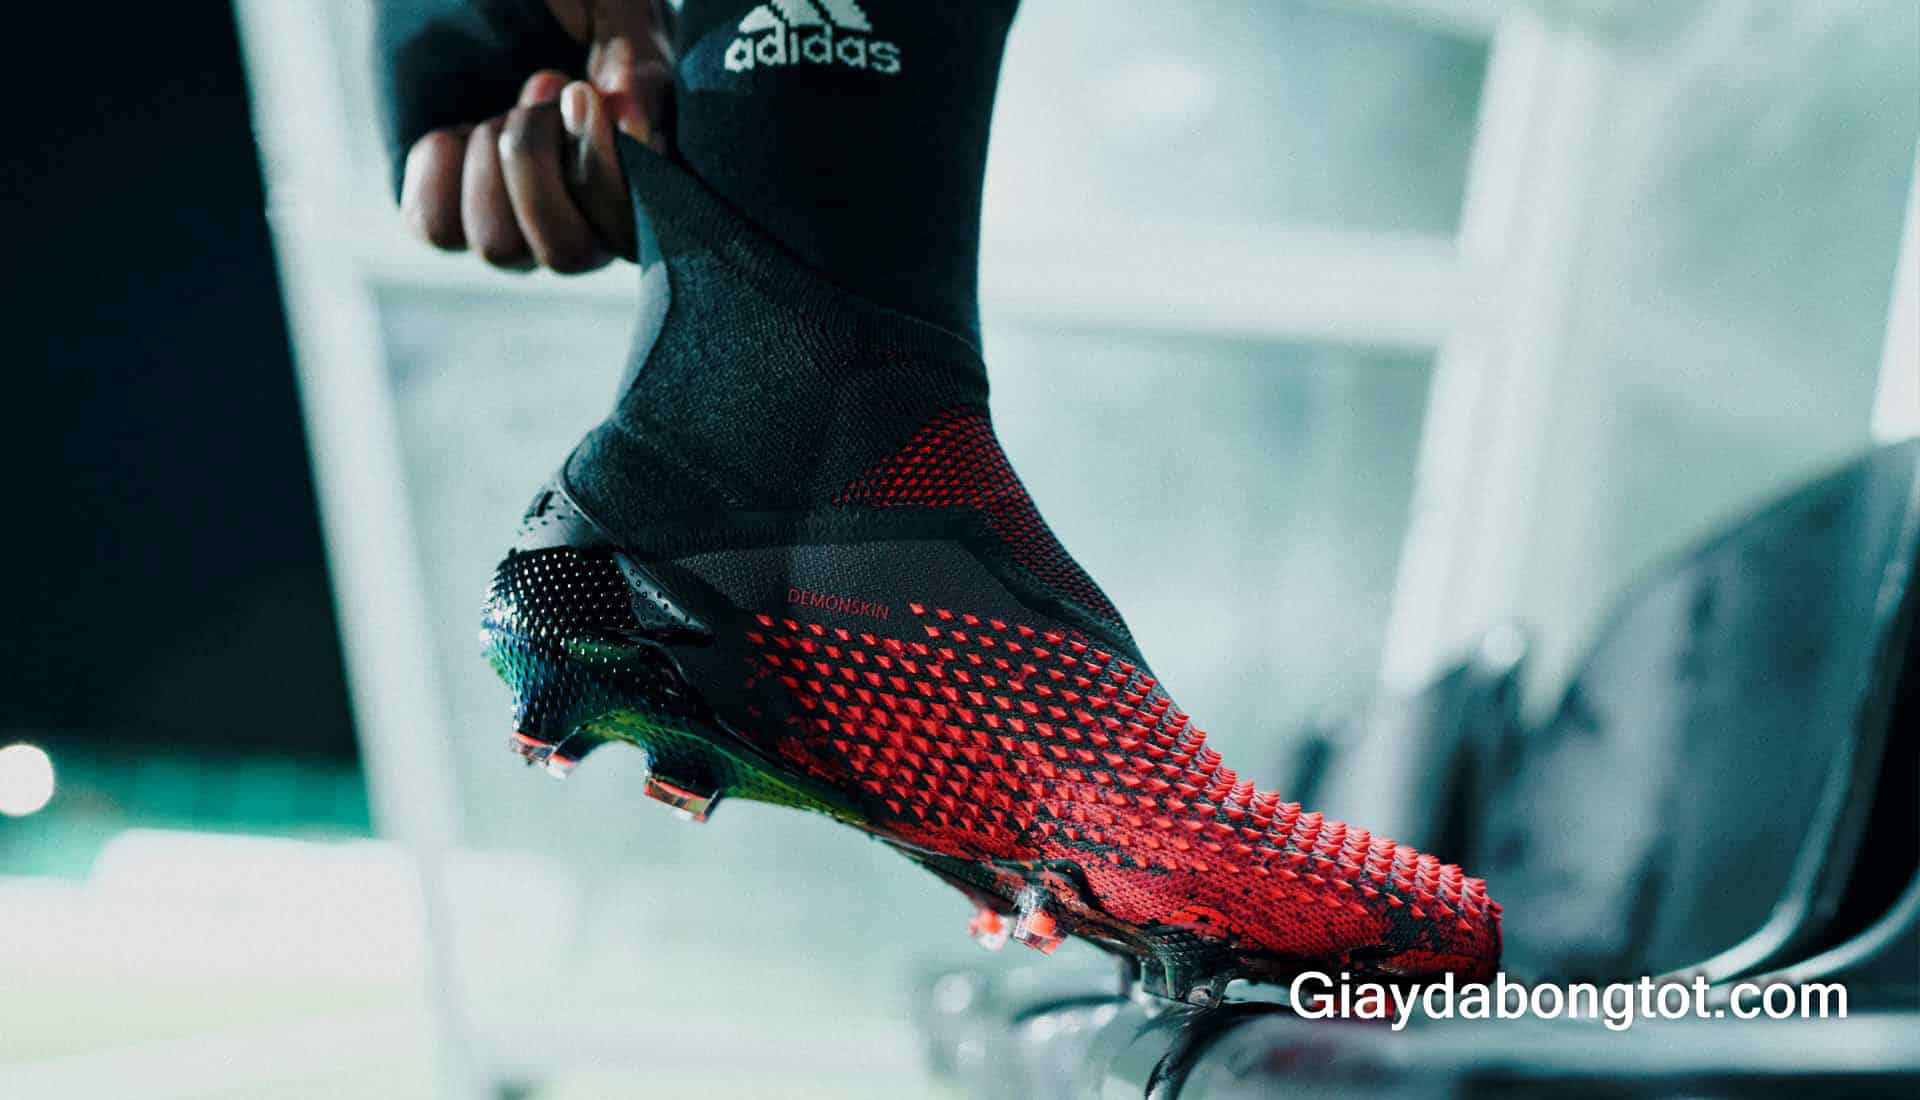 Ra mắt giày bóng đá Adidas Predator 20+ Mutator mới